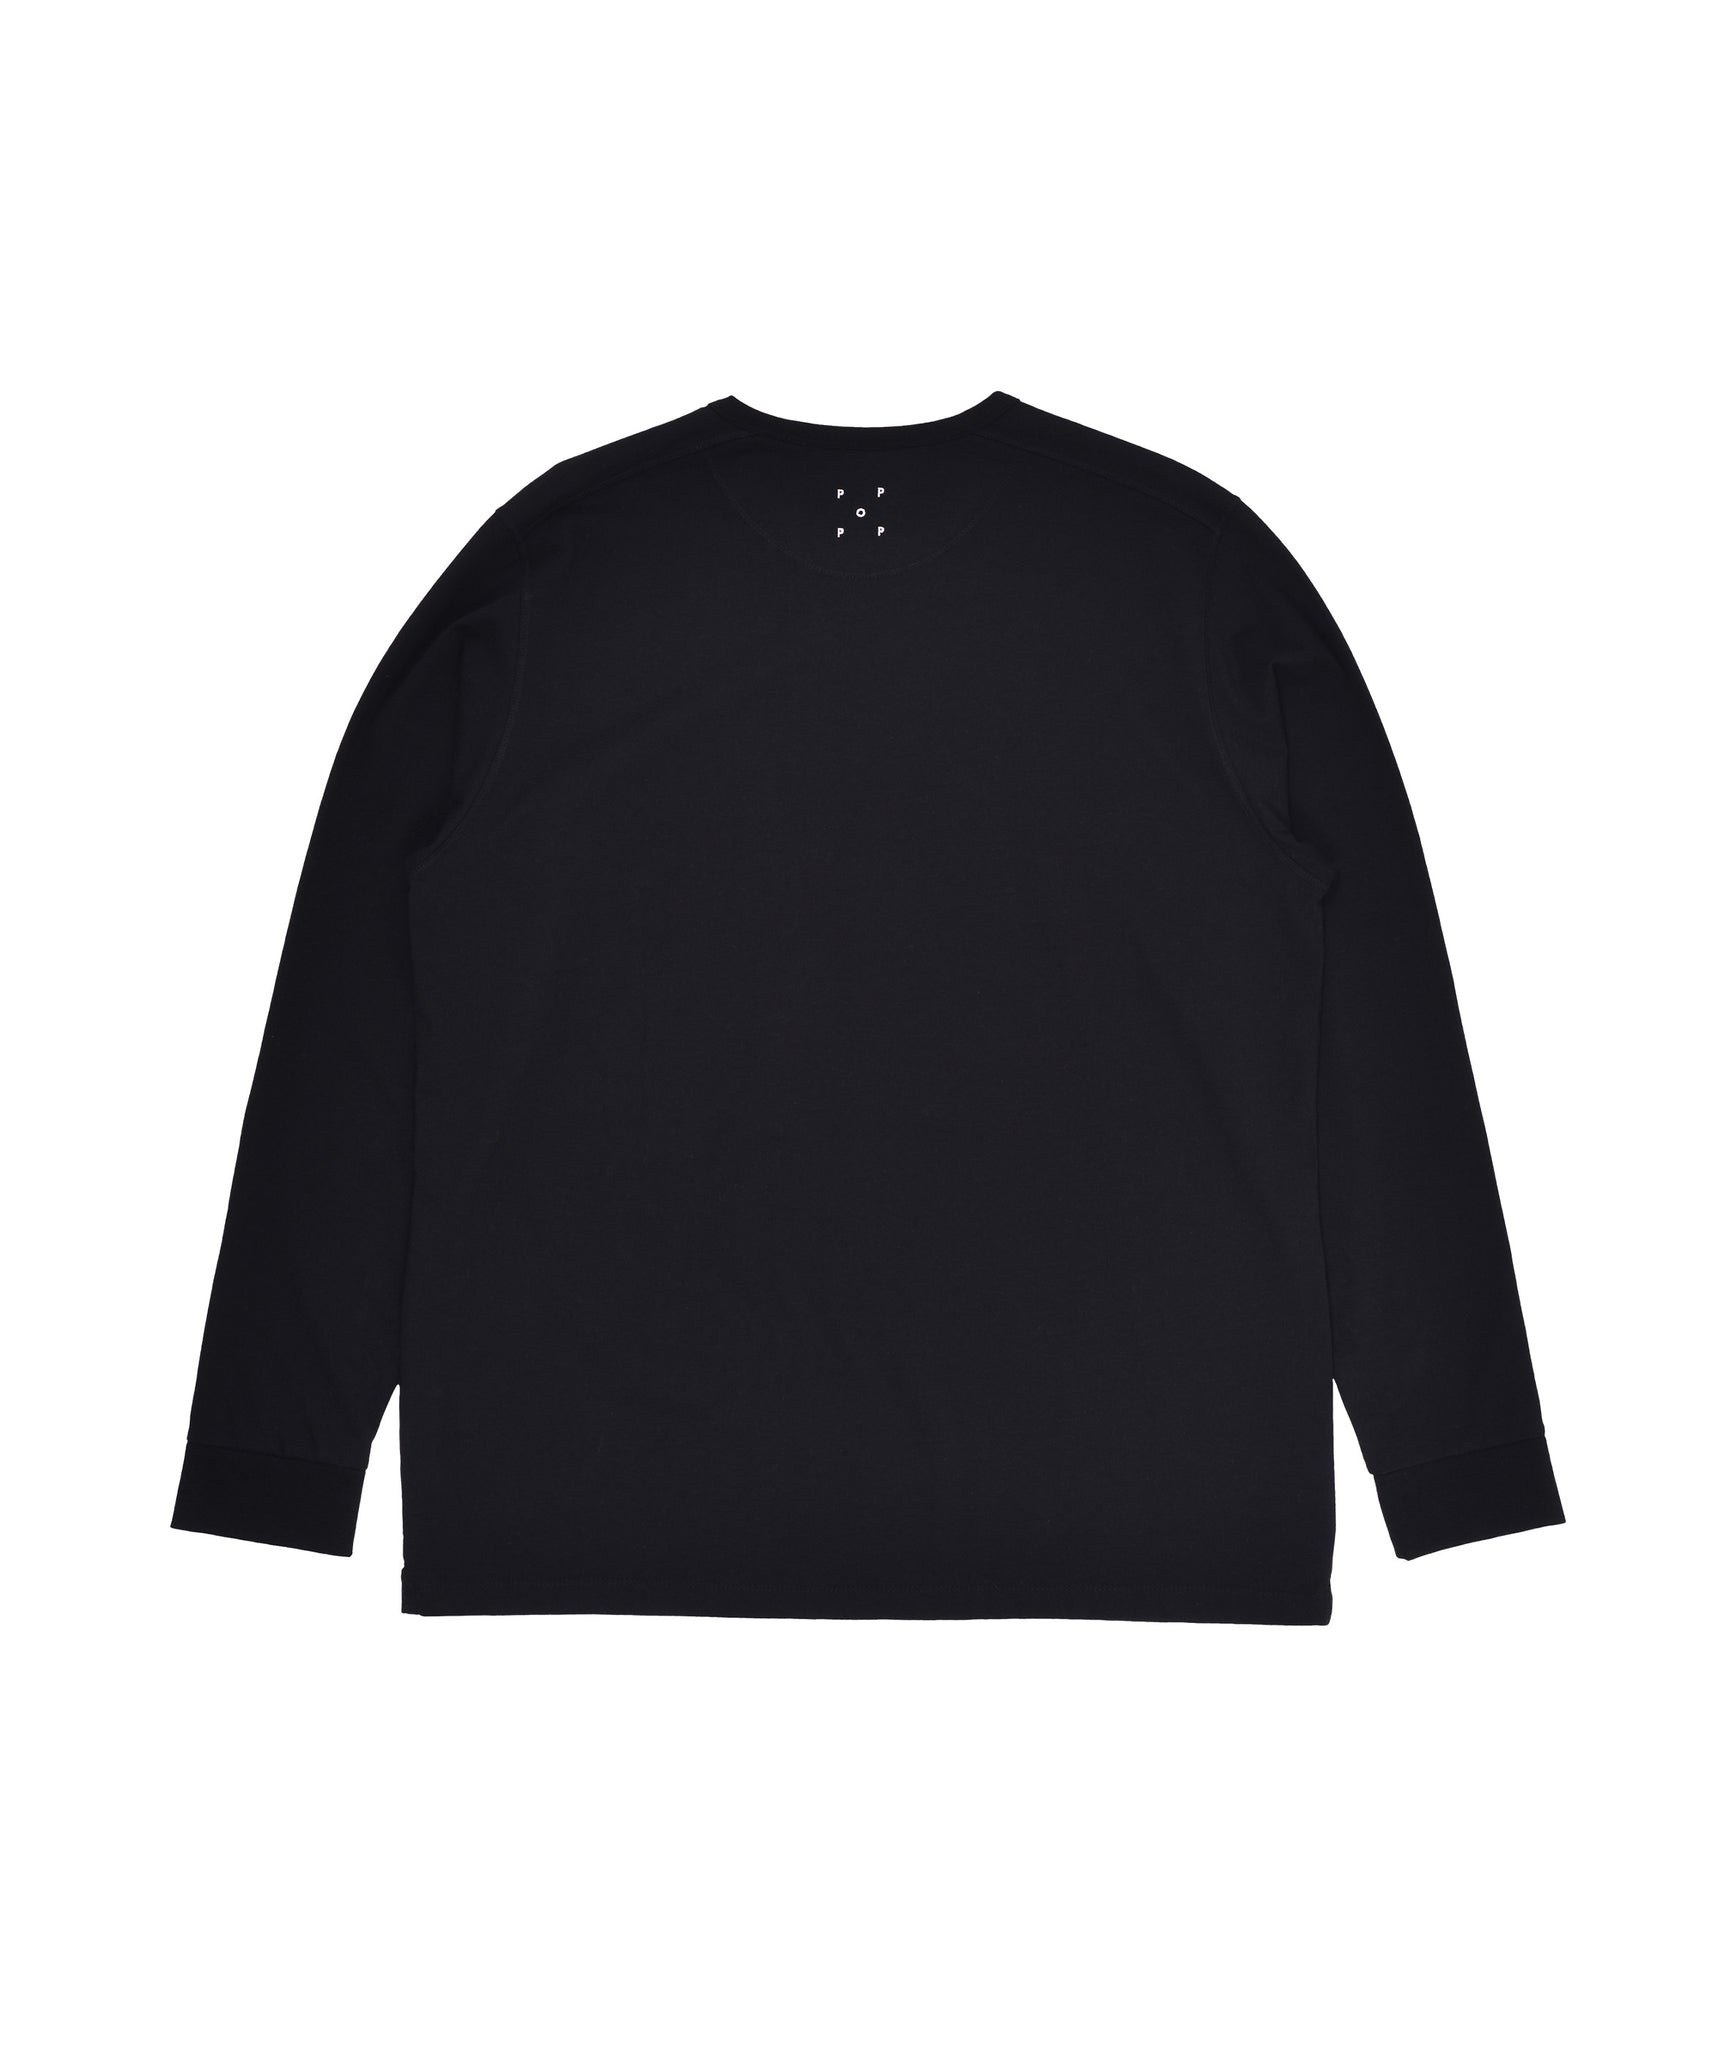 Rop Longsleeve T-shirt - Black